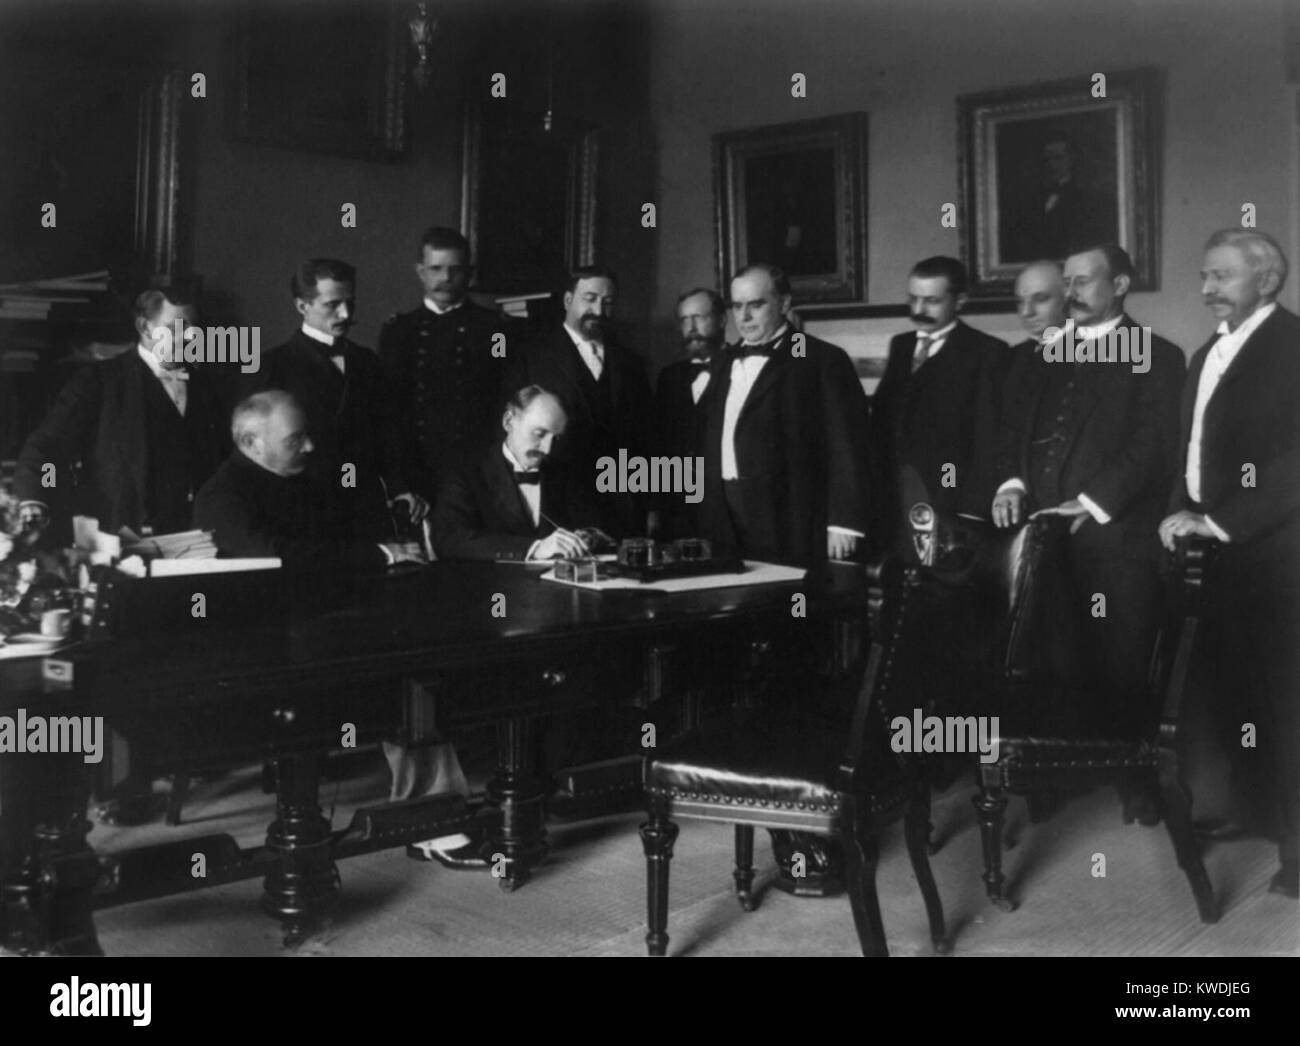 William R. Tag Unterzeichnung des Friedens Protokoll des Spanisch-Amerikanischen Krieges, am 12.08.1898. Präsident William McKinley steht 5. von rechts im Schaltschrank, White House, Washington, D.C. (BSLOC 2017 10 88) Stockfoto